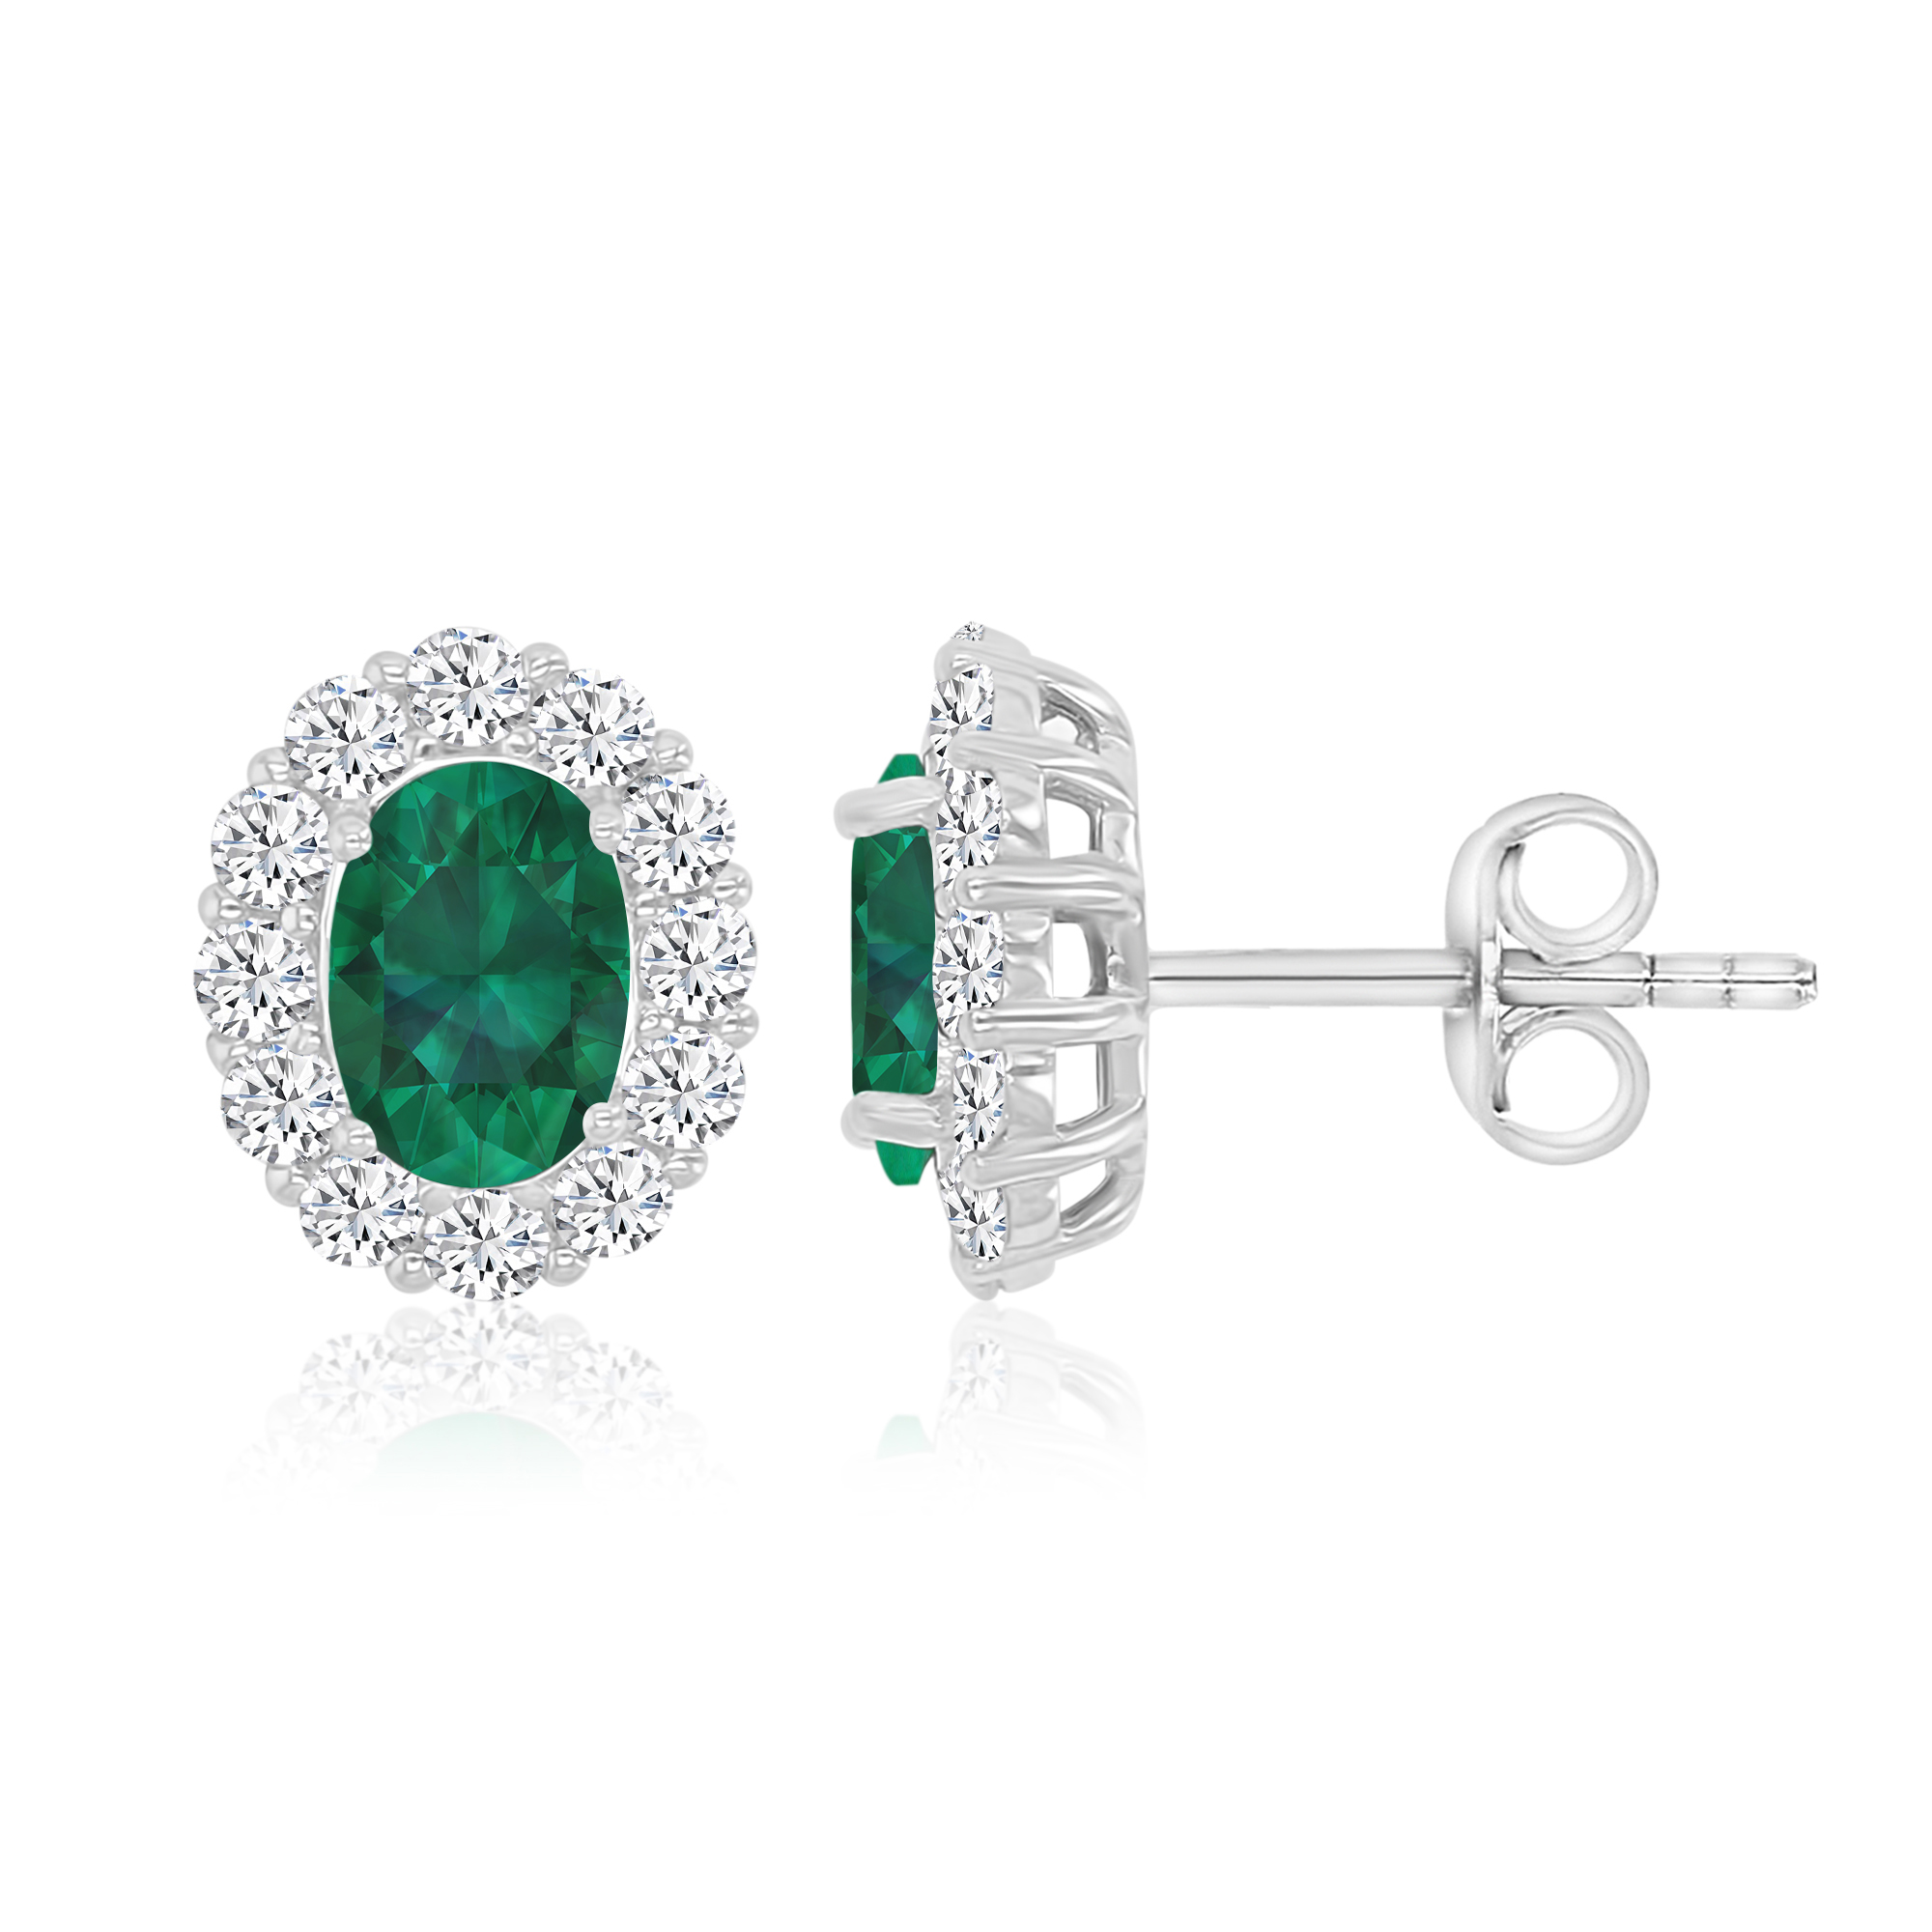 Sterling Silver Rhodium 7x5mm Oval Cut Emerald & Clear CZ Rd Cut Halo Stud Earring